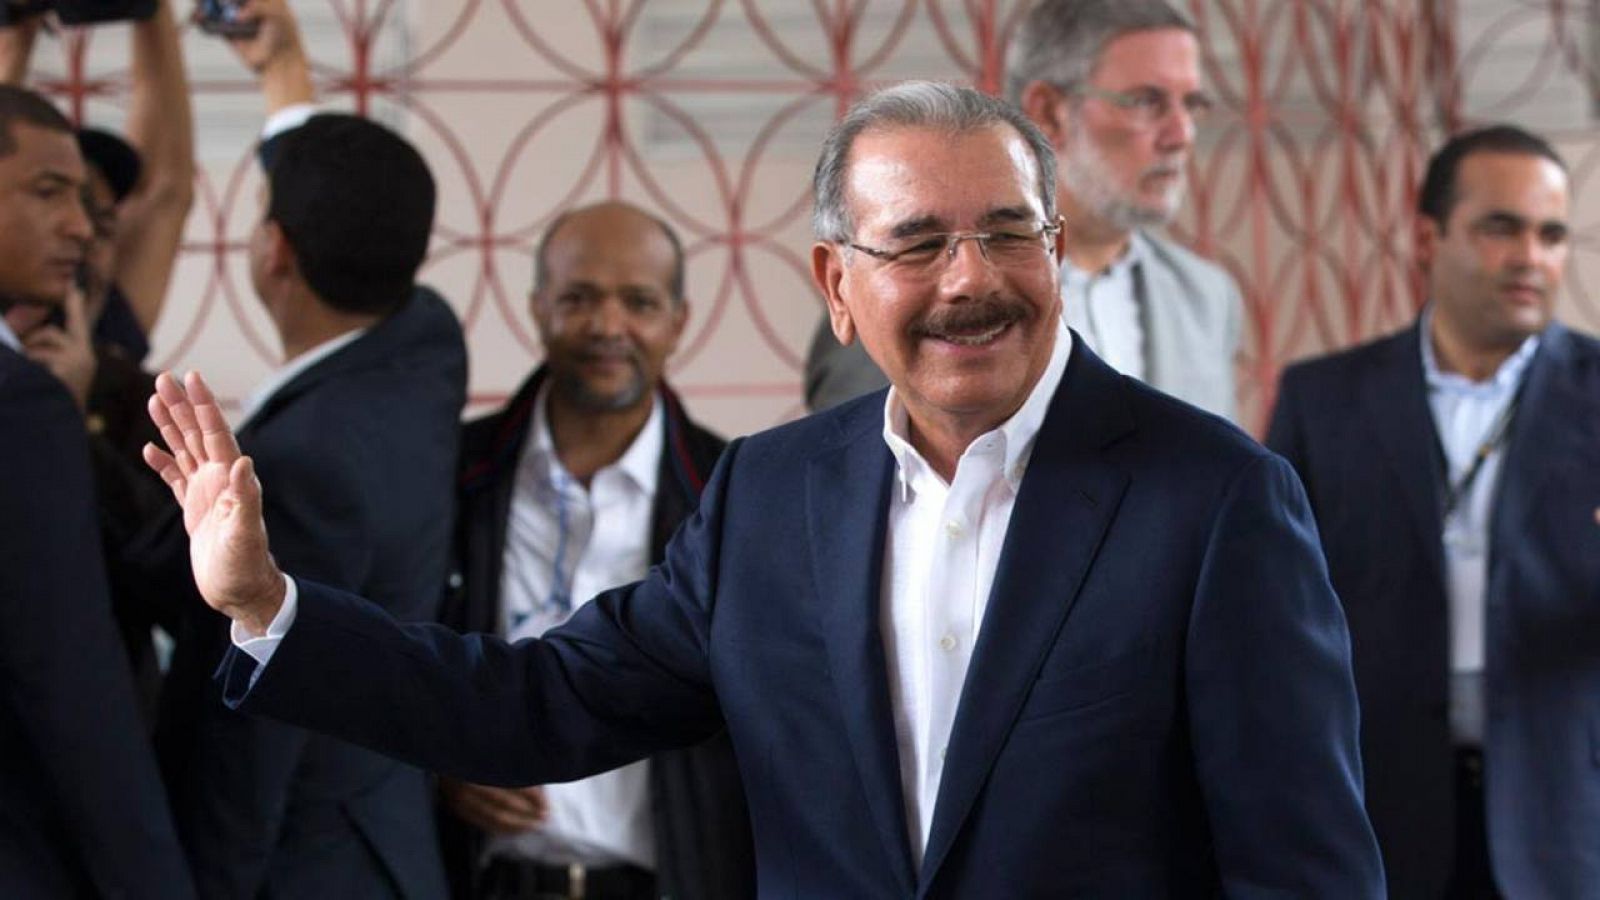 El presidente de Republica Dominicana, Danilo Medina, ha vuelto a ganar las elecciones presidenciales